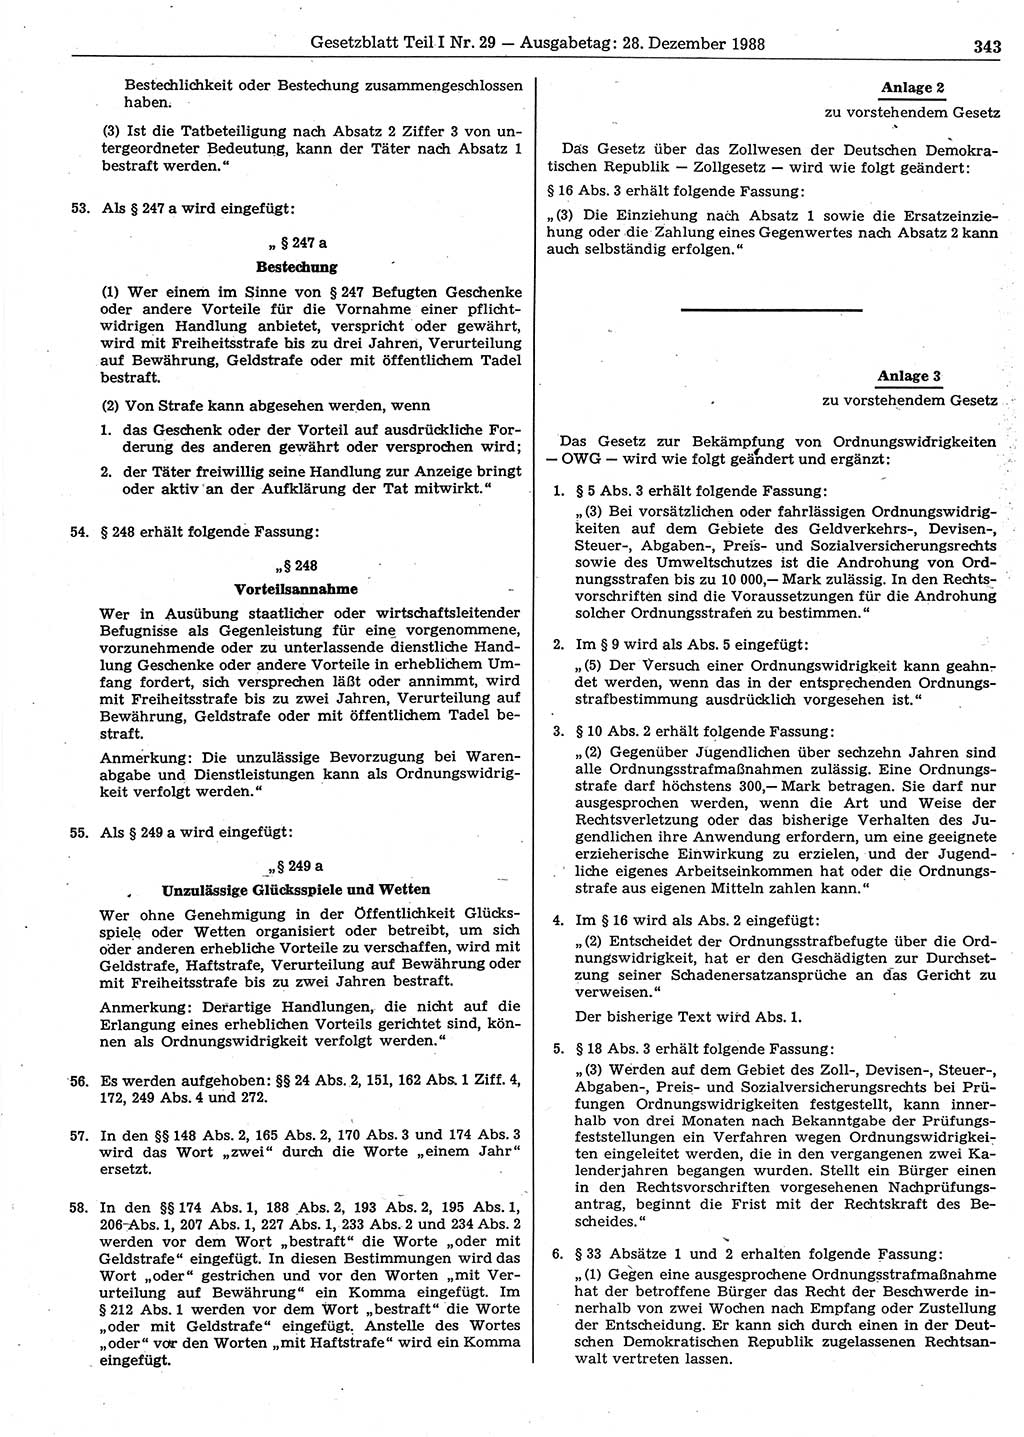 Gesetzblatt (GBl.) der Deutschen Demokratischen Republik (DDR) Teil Ⅰ 1988, Seite 343 (GBl. DDR Ⅰ 1988, S. 343)